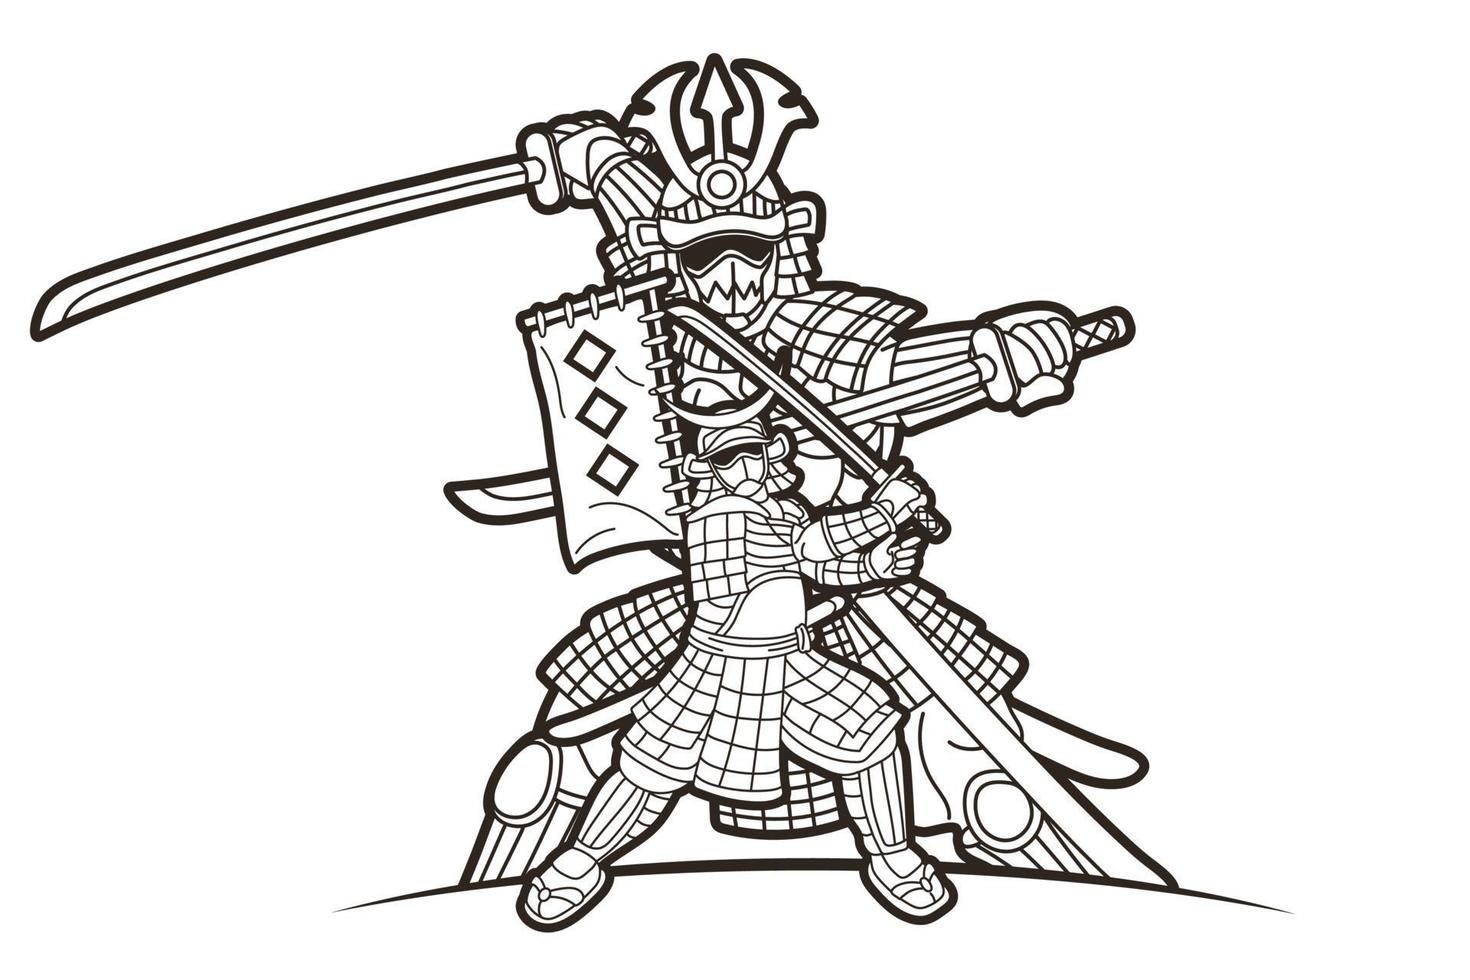 skizze samurai krieger japanischer kämpfer ronin mit waffenaktion vektor